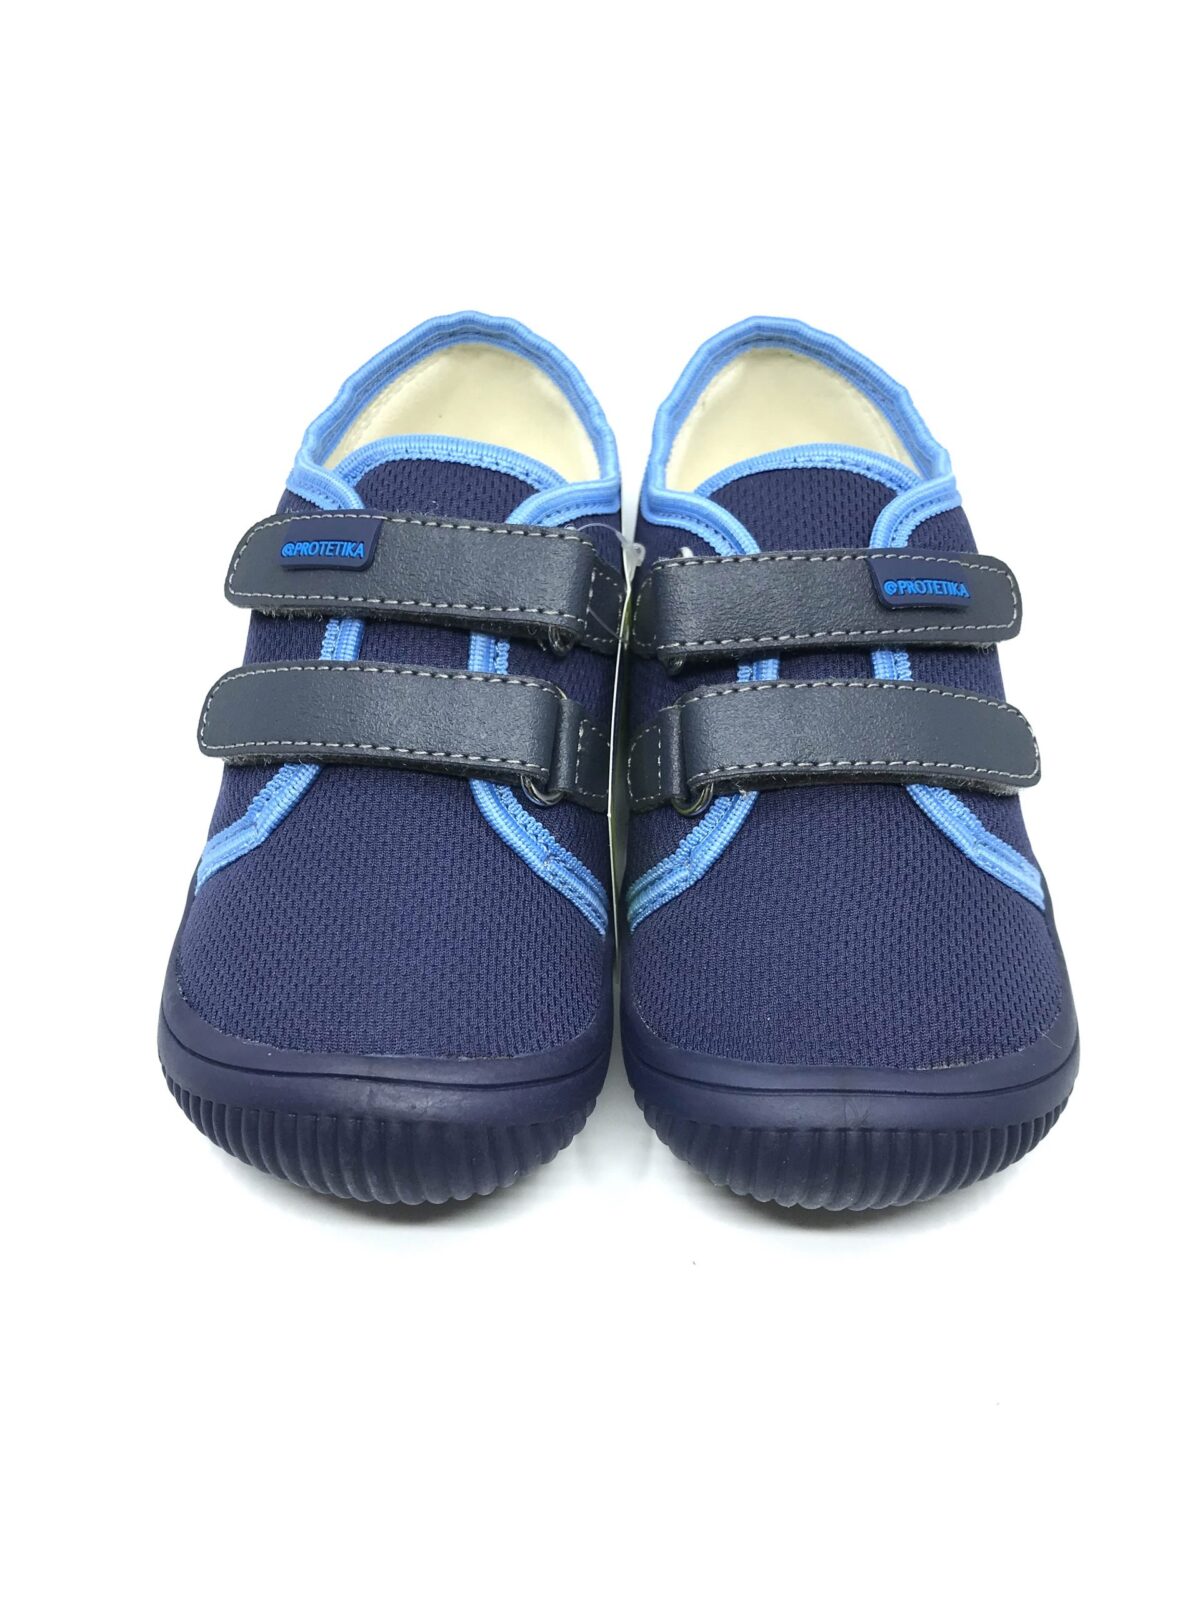 Protetika Alix, Navy Laste barefoot jalatsid - HellyK - Kvaliteetsed lasteriided, villariided, barefoot jalatsid